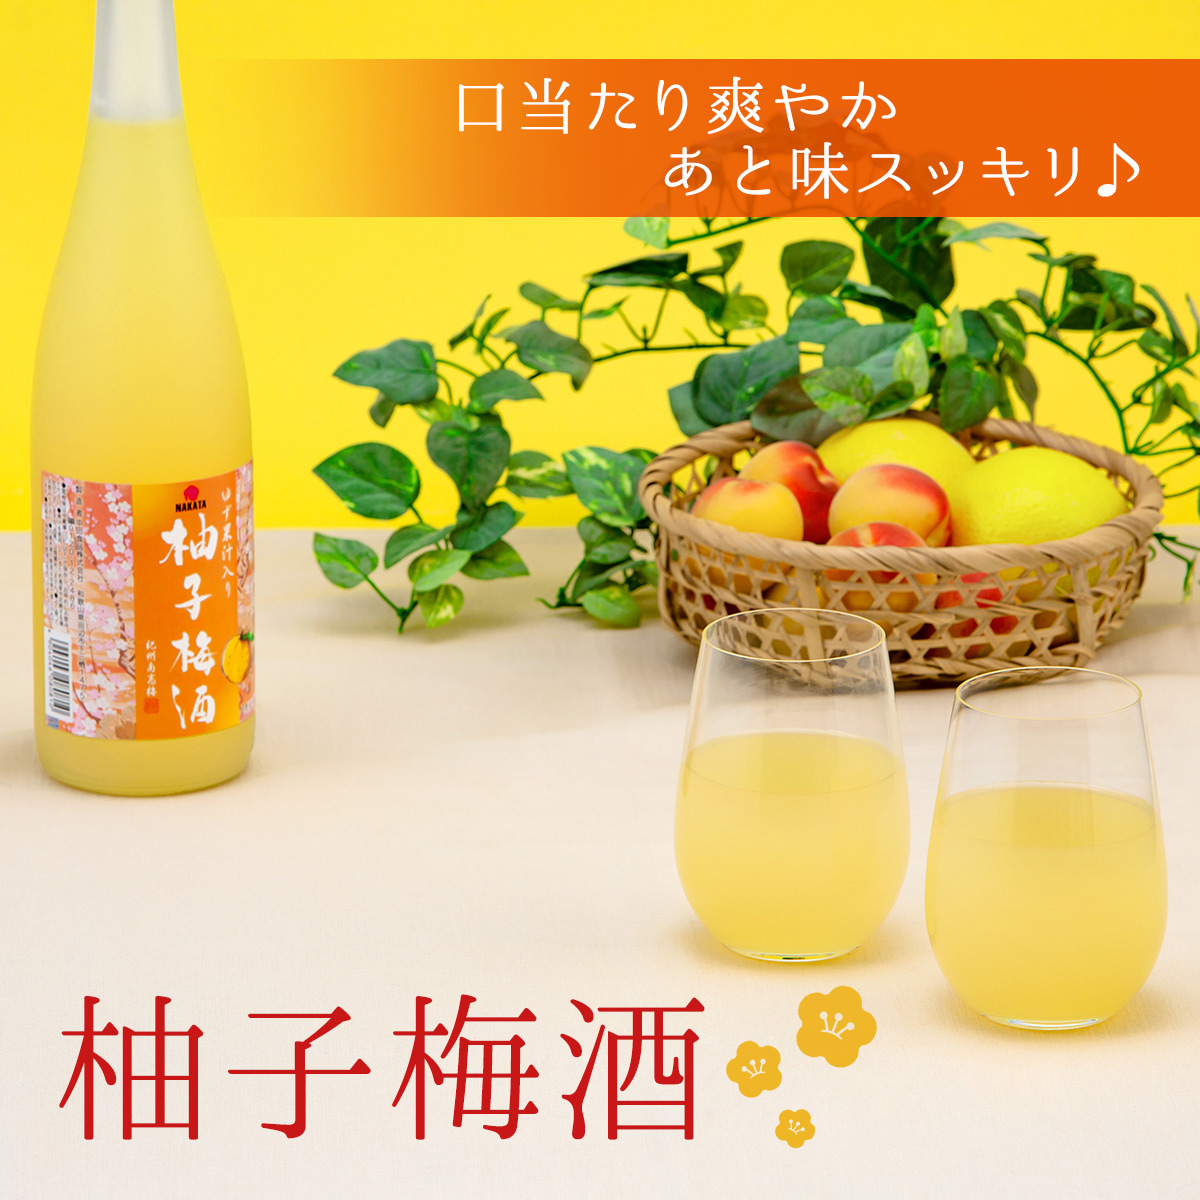 柚子梅酒 720ml 中田食品 紀州産 完熟南高梅 ゆず 熟成貯蔵 和歌山県産 